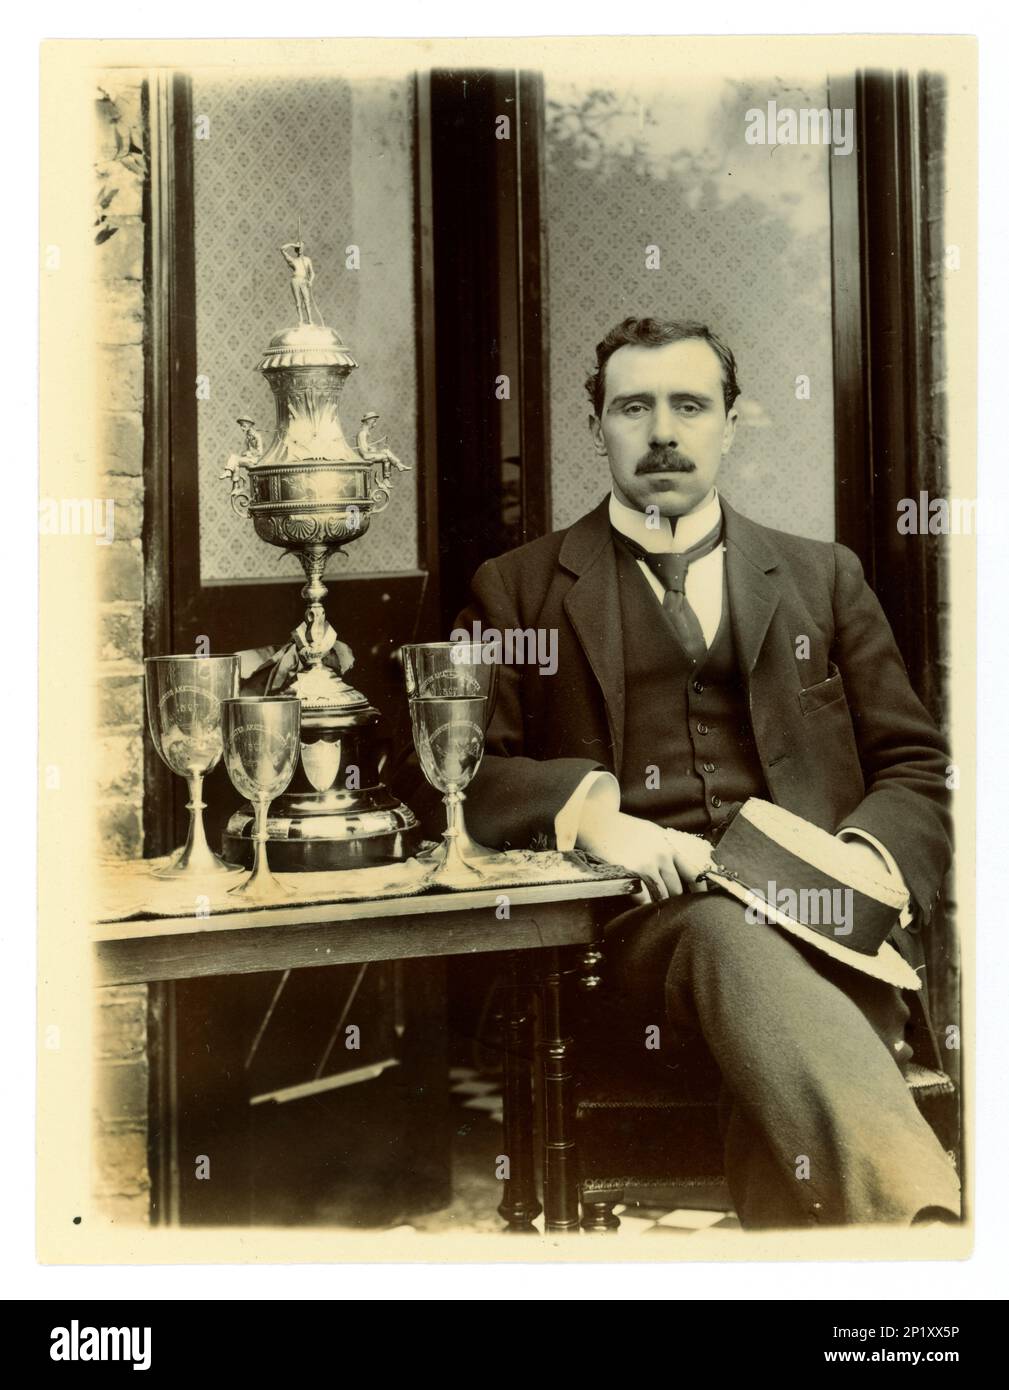 Photo victorienne originale de gent, tenant un bateau. À côté de lui sur une table, il y a un grand vase de défi de Worcester, / régate trophée pour l'aviron, et d'autres coupes, éventuellement membre d'un quatre en boîte équipage. Région de Worcester, Royaume-Uni vers 1897-1899 Banque D'Images